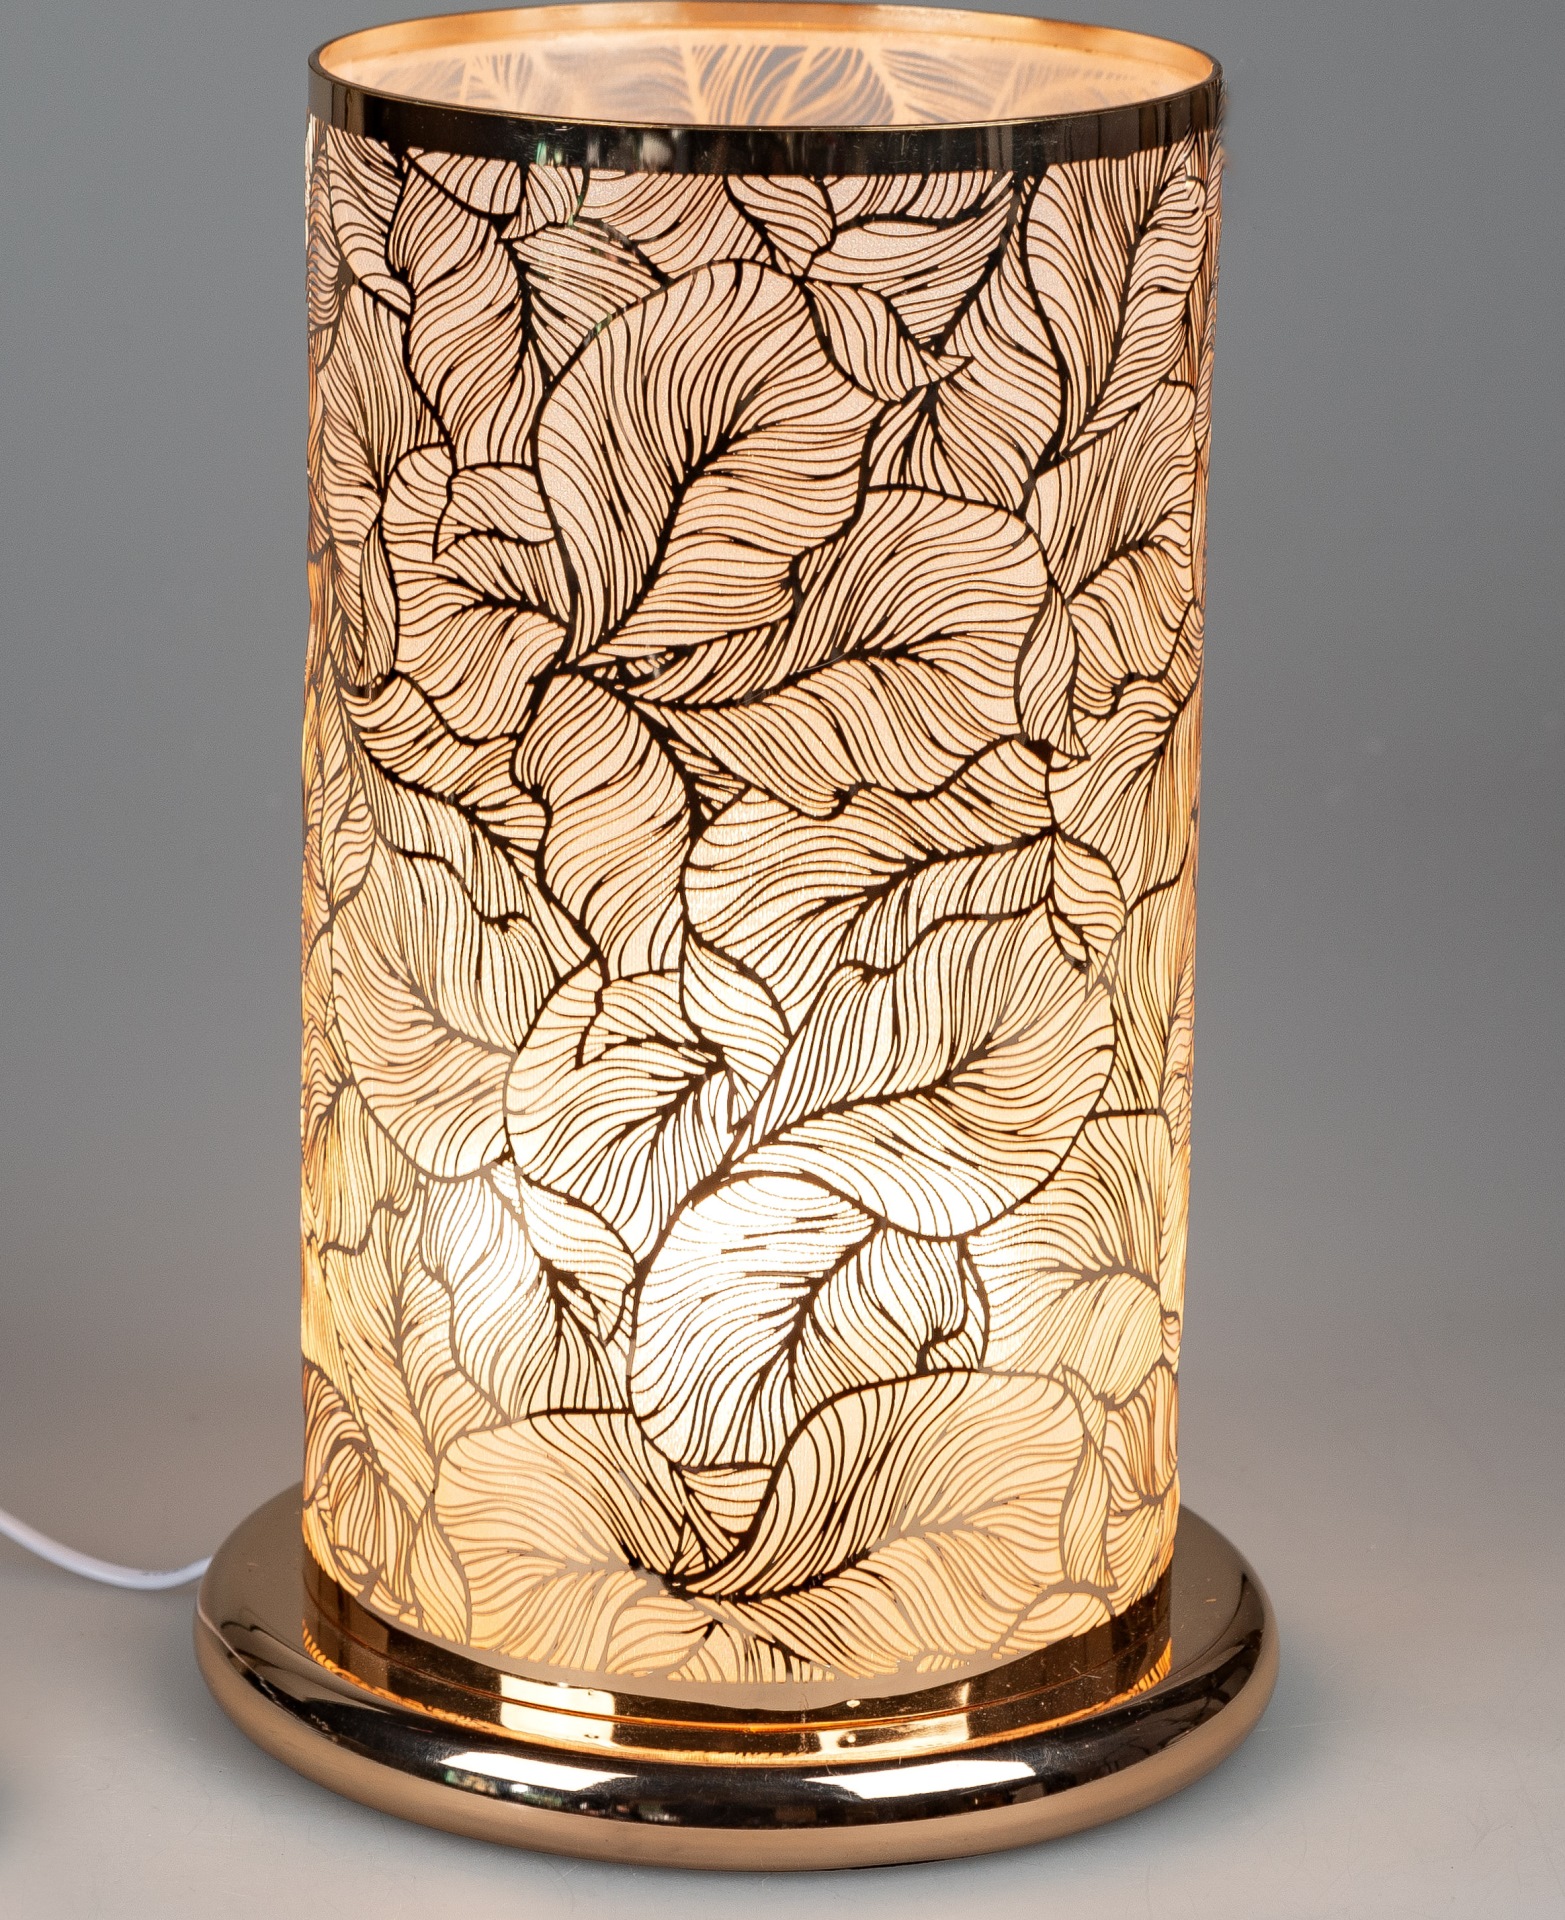 Formano Lampe oval XL Tischlampe weiß Keramik DEKO Lebensbaum  Geschenk